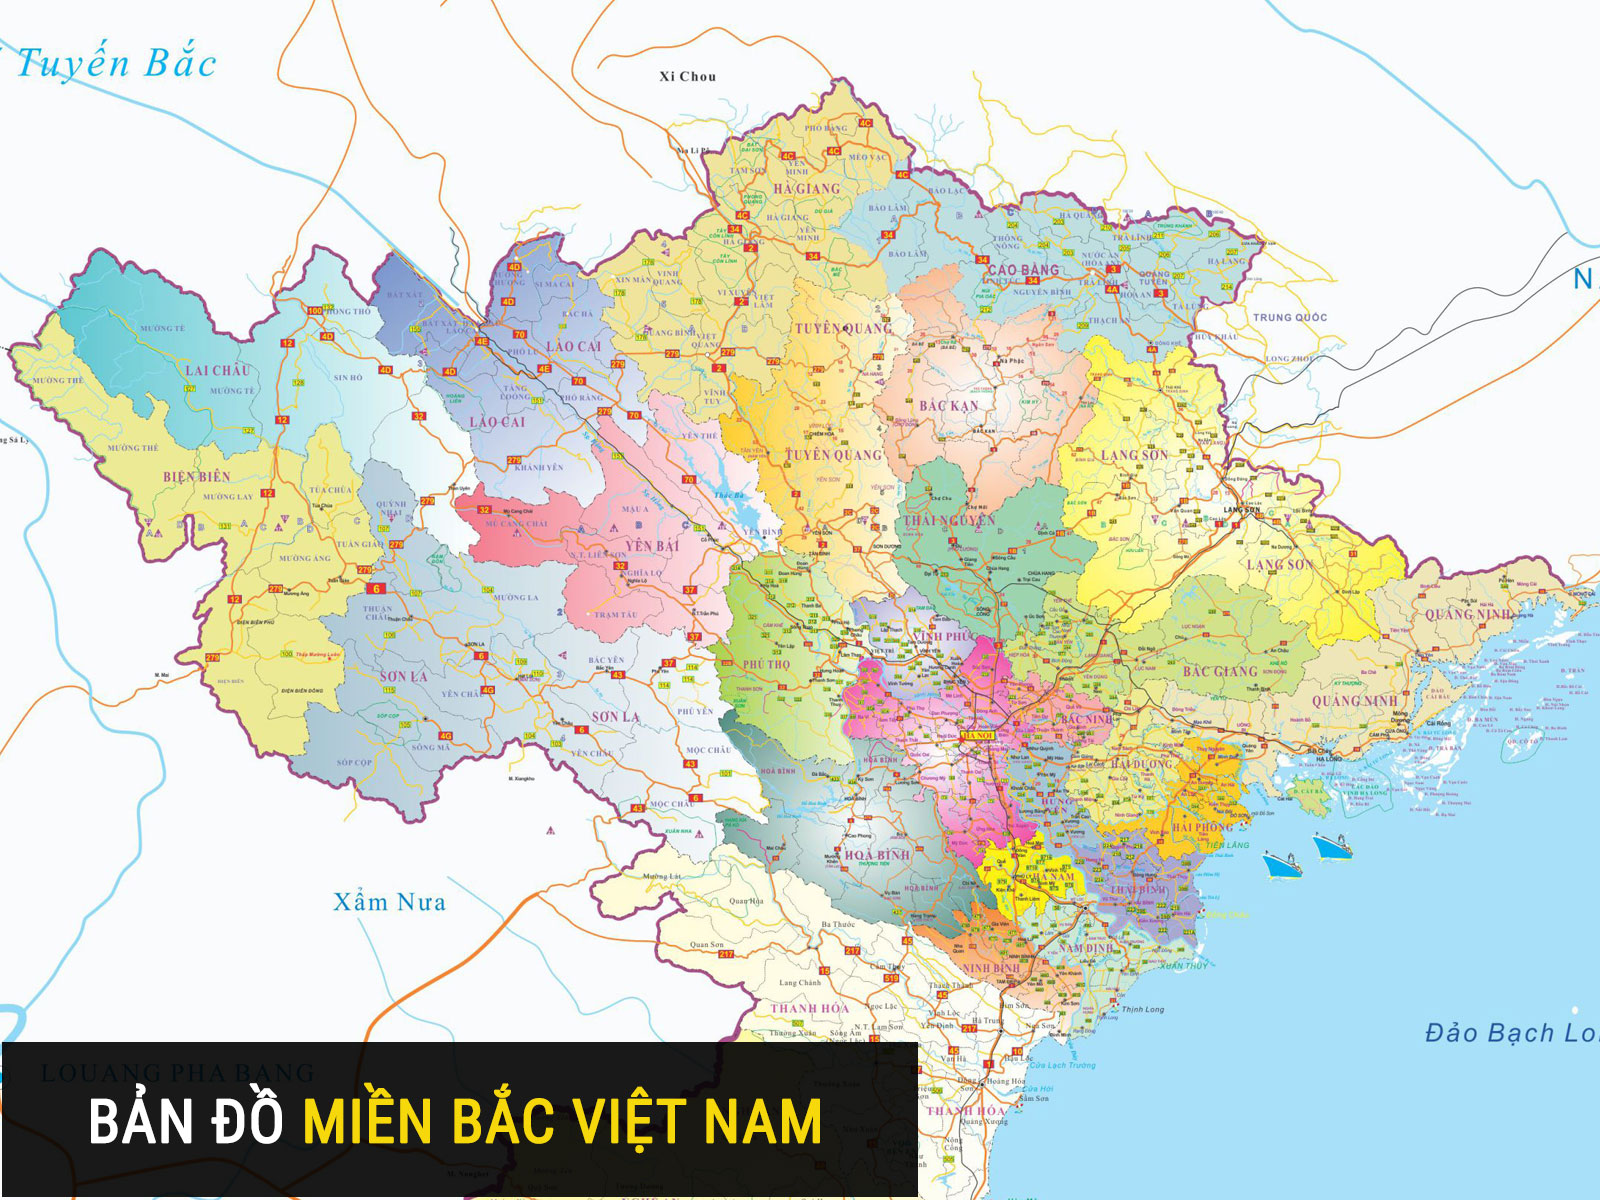 Với bản đồ tỉnh miền Bắc Việt Nam 2024, bạn có thể tìm hiểu và khám phá những địa điểm, đơn vị hành chính cũng như phát triển kinh tế ở khu vực Miền Bắc của đất nước ta.